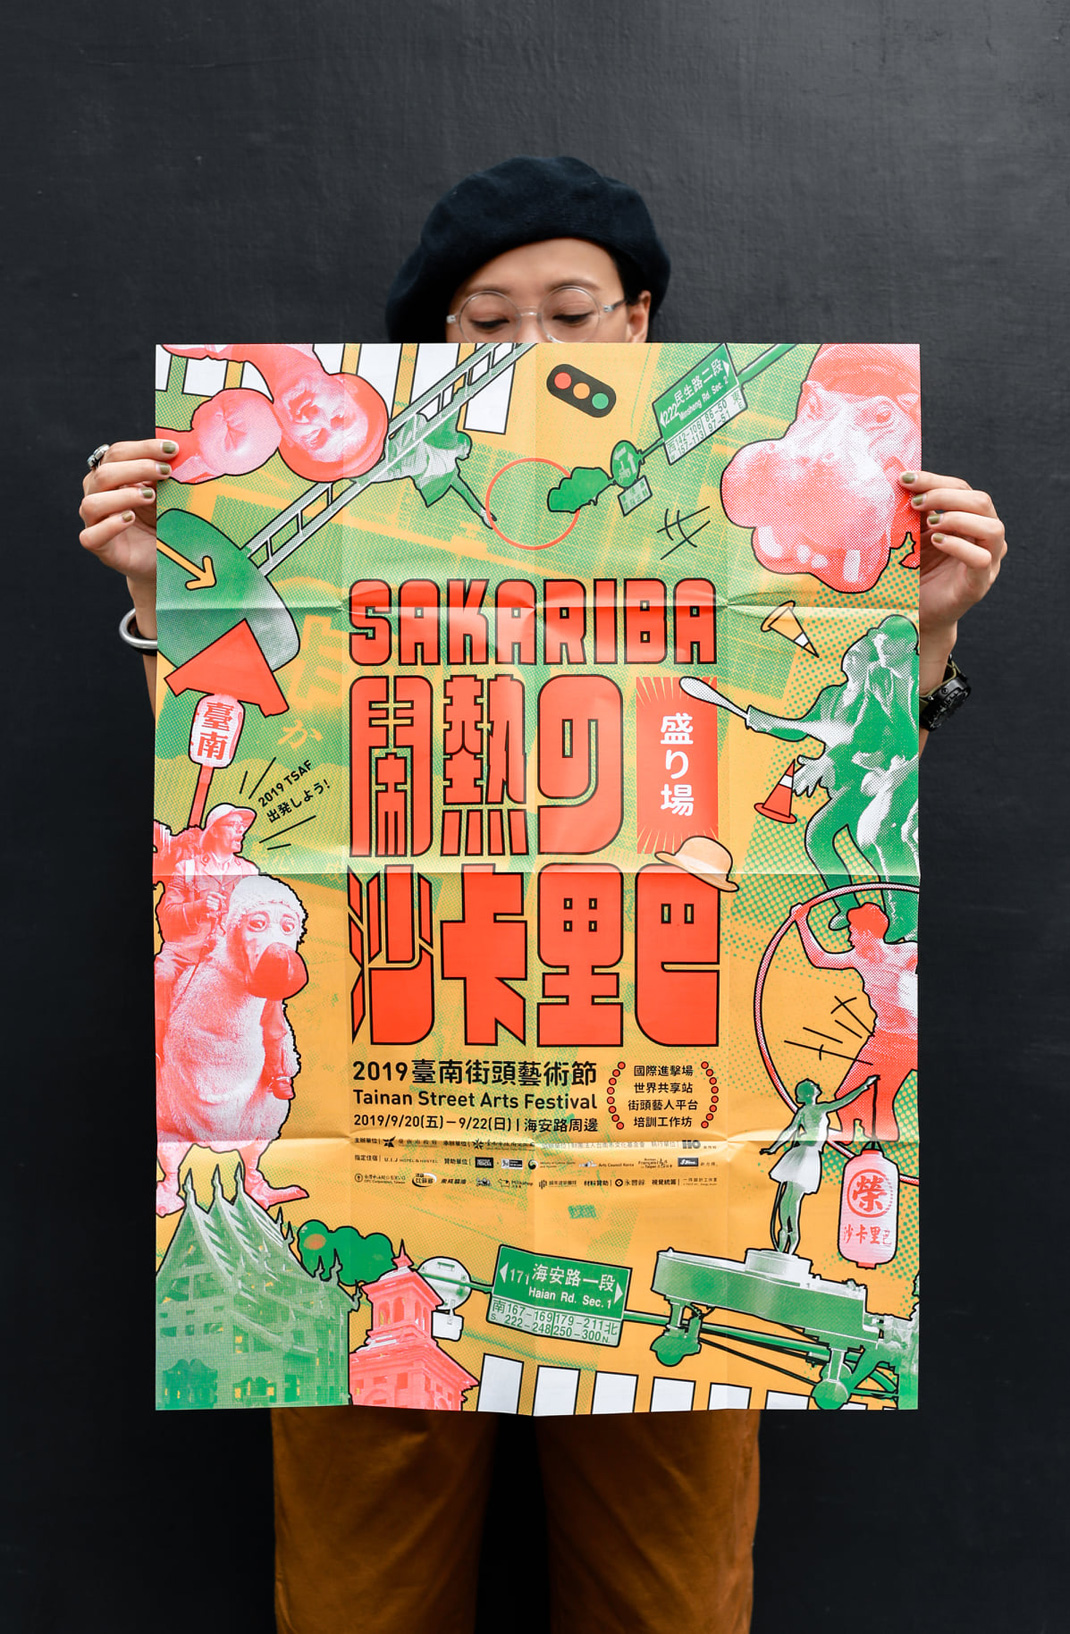 台南街头艺术节活动视觉设计 台南 艺术节 海报设计 广告设计 logo设计 vi设计 空间设计 视觉餐饮